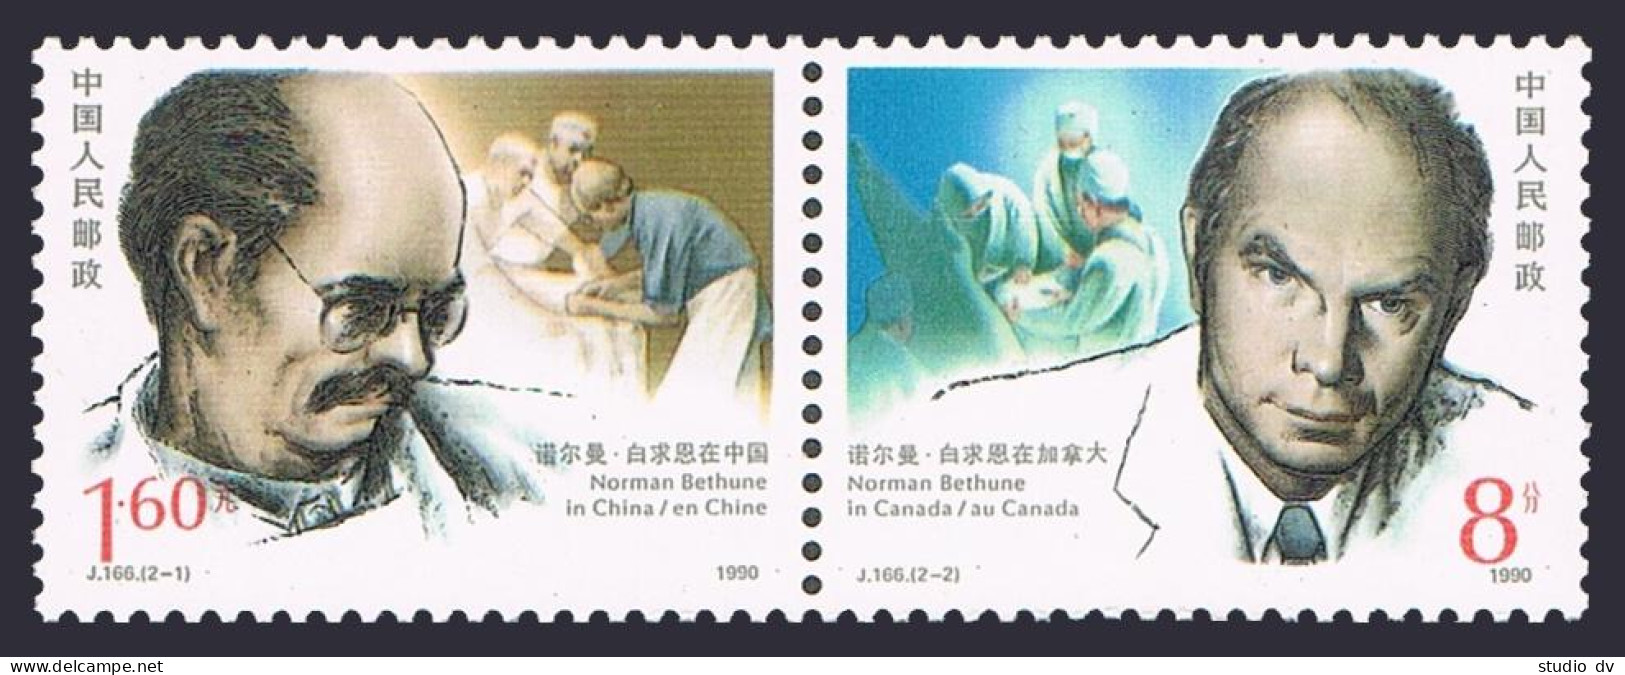 China PRC 2263-2264a, MNH. Michel 2287-2288. Norman Bethune, Surgeon, 1990. - Neufs